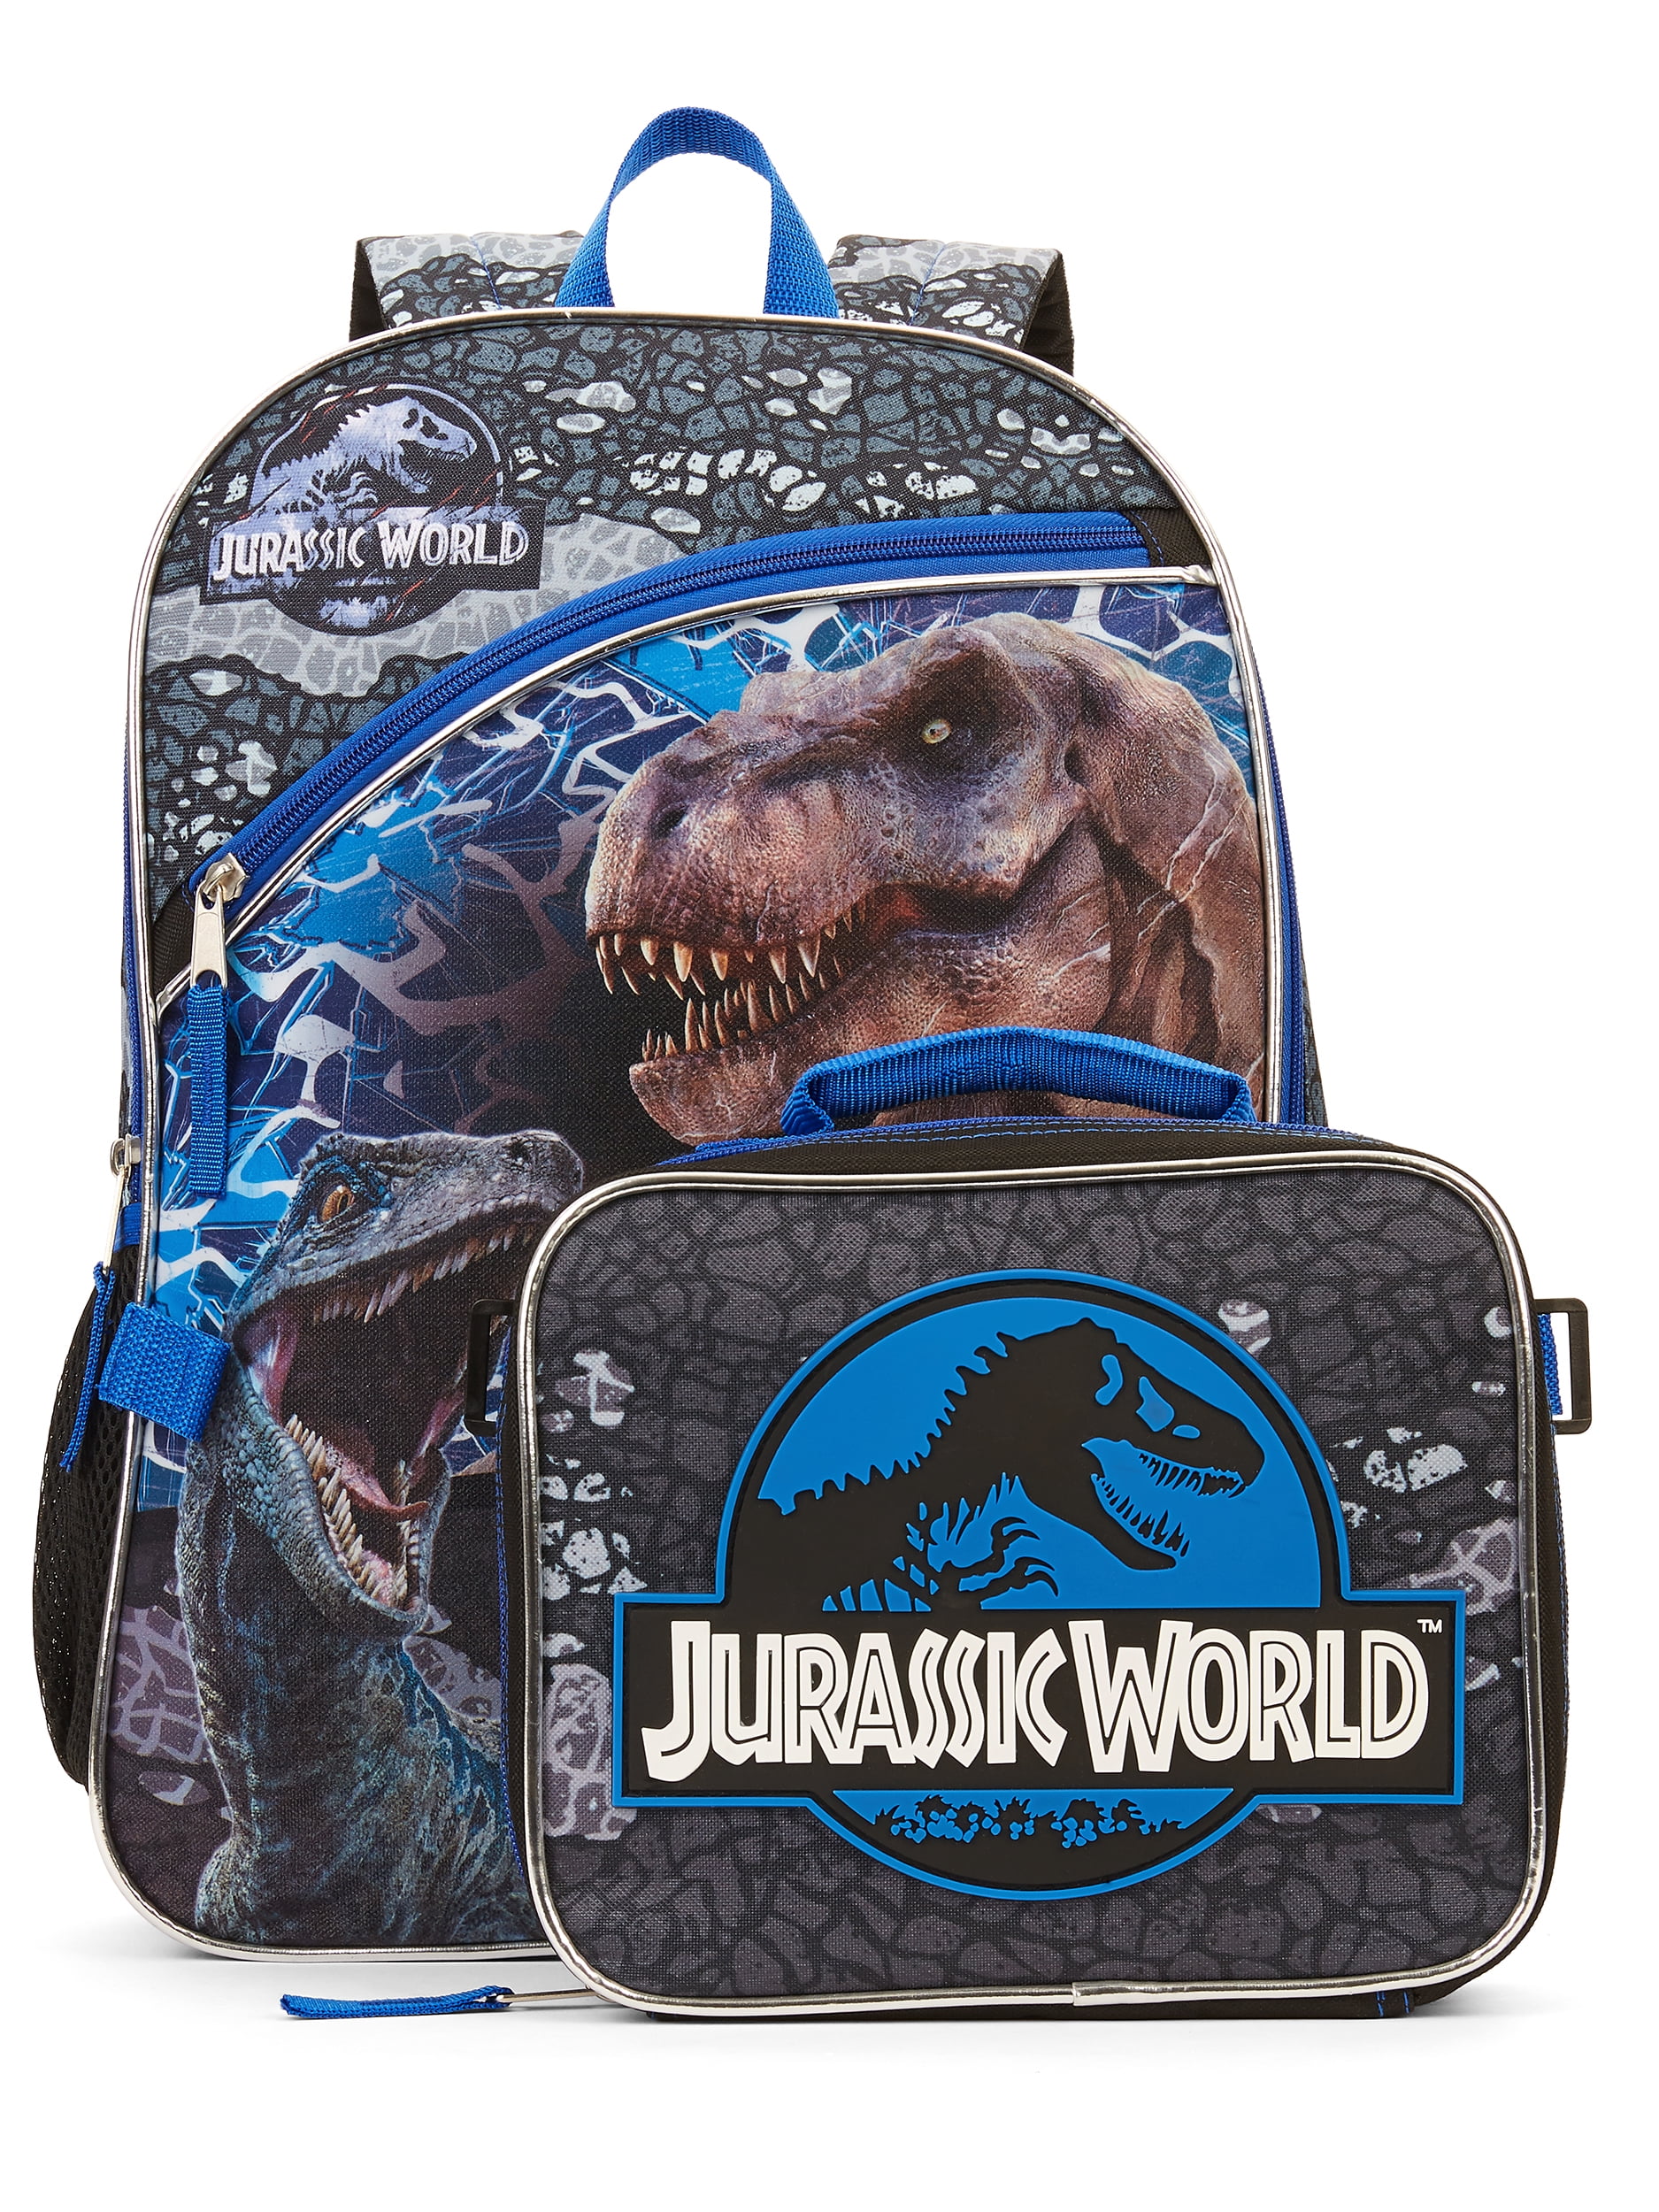 Jurassic World Danger Backpack Travel School Rucksack Bag Kids 